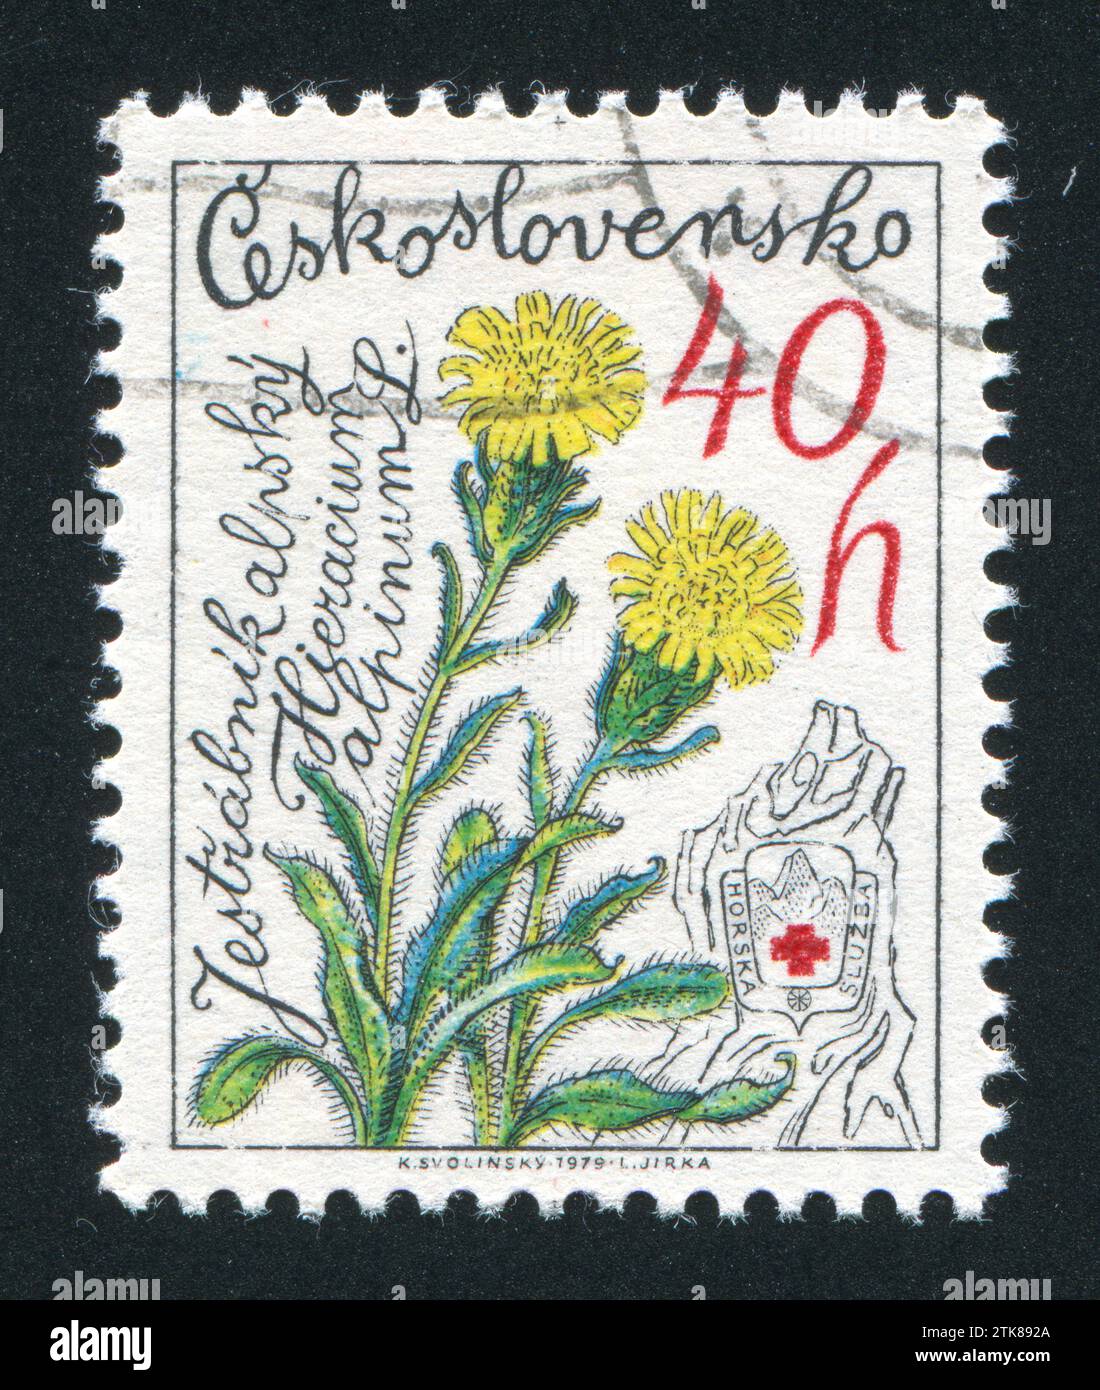 CZECHOSLOVAKIA - CIRCA 1979: stamp printed by Czechoslovakia, shows Alpine Hawkweed, circa 1979 Stock Photo